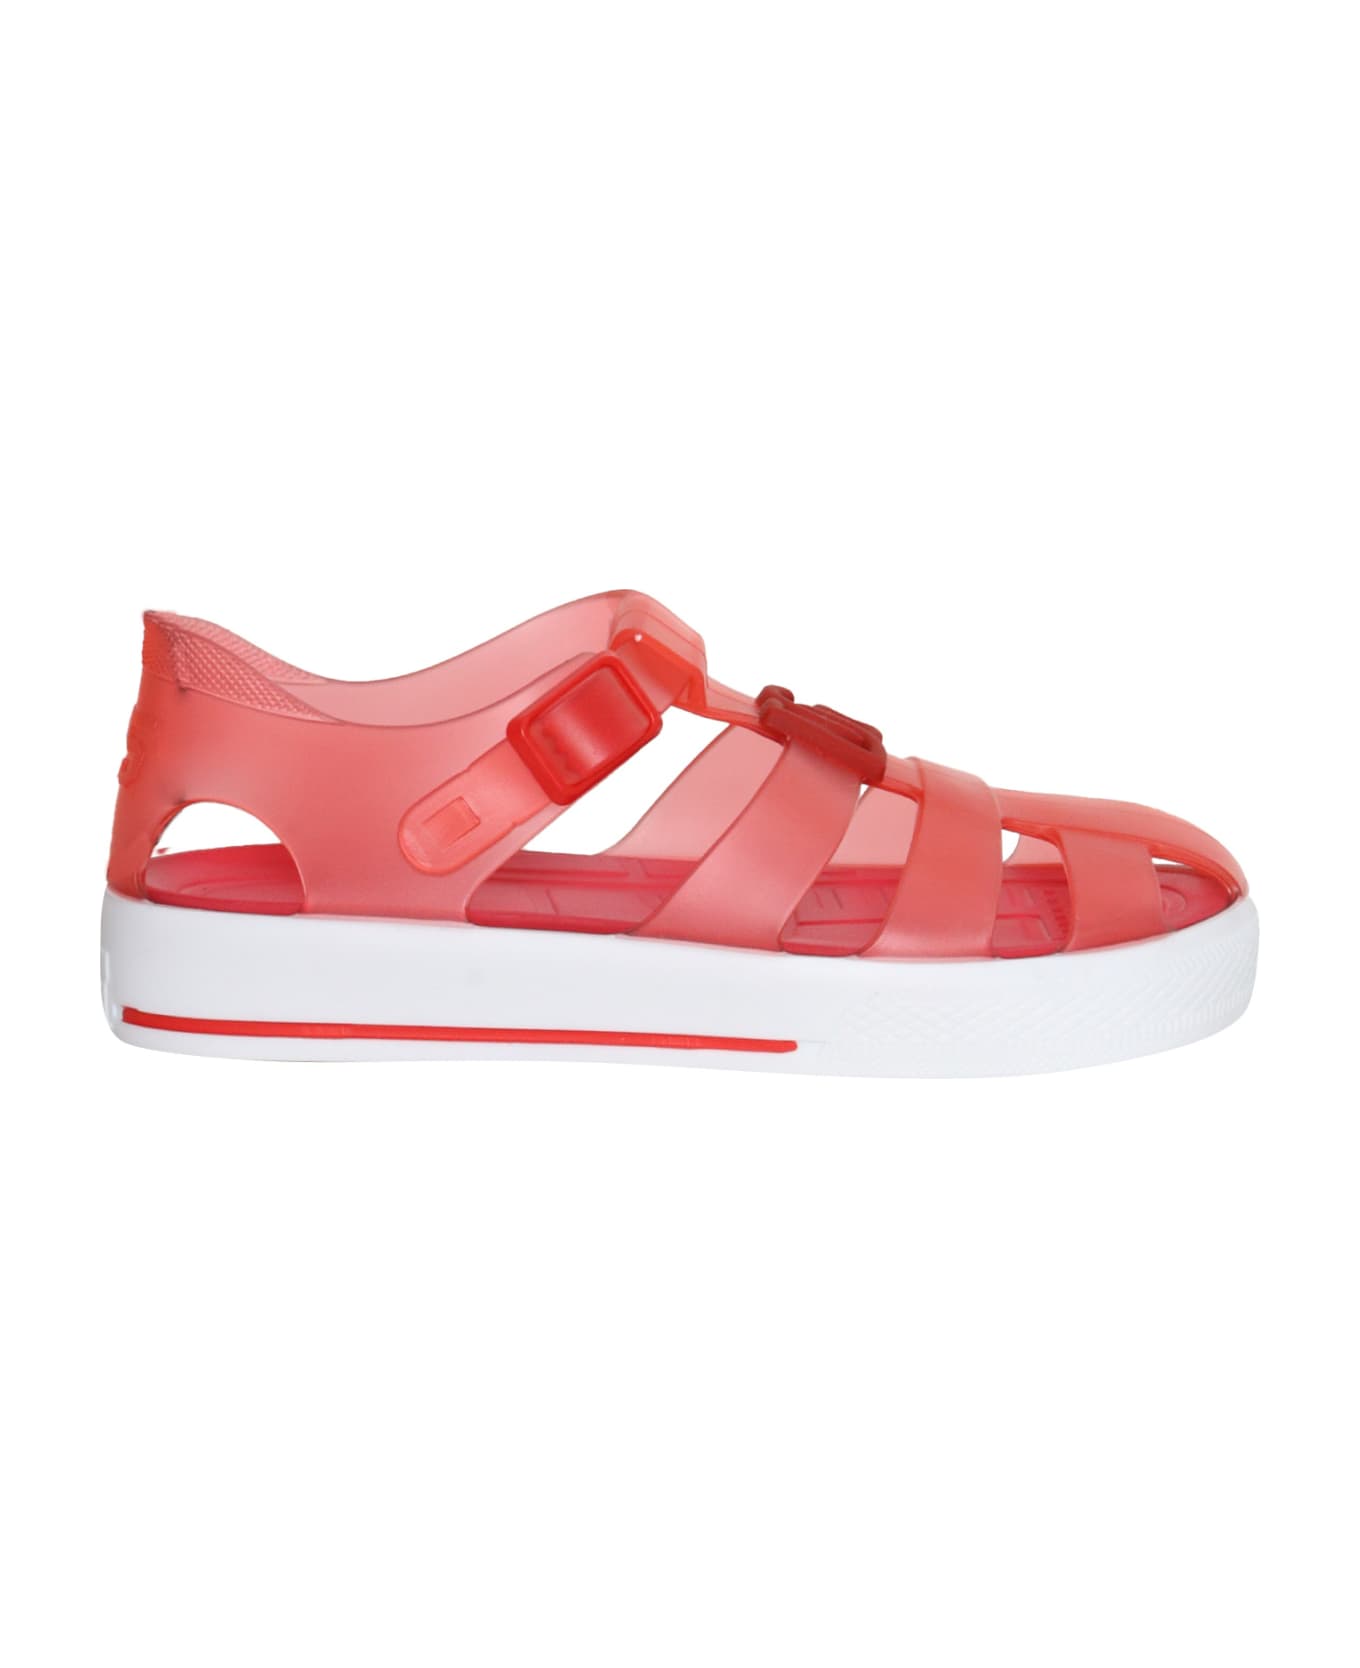 Dolce & Gabbana Pink Spider Sandals - RED